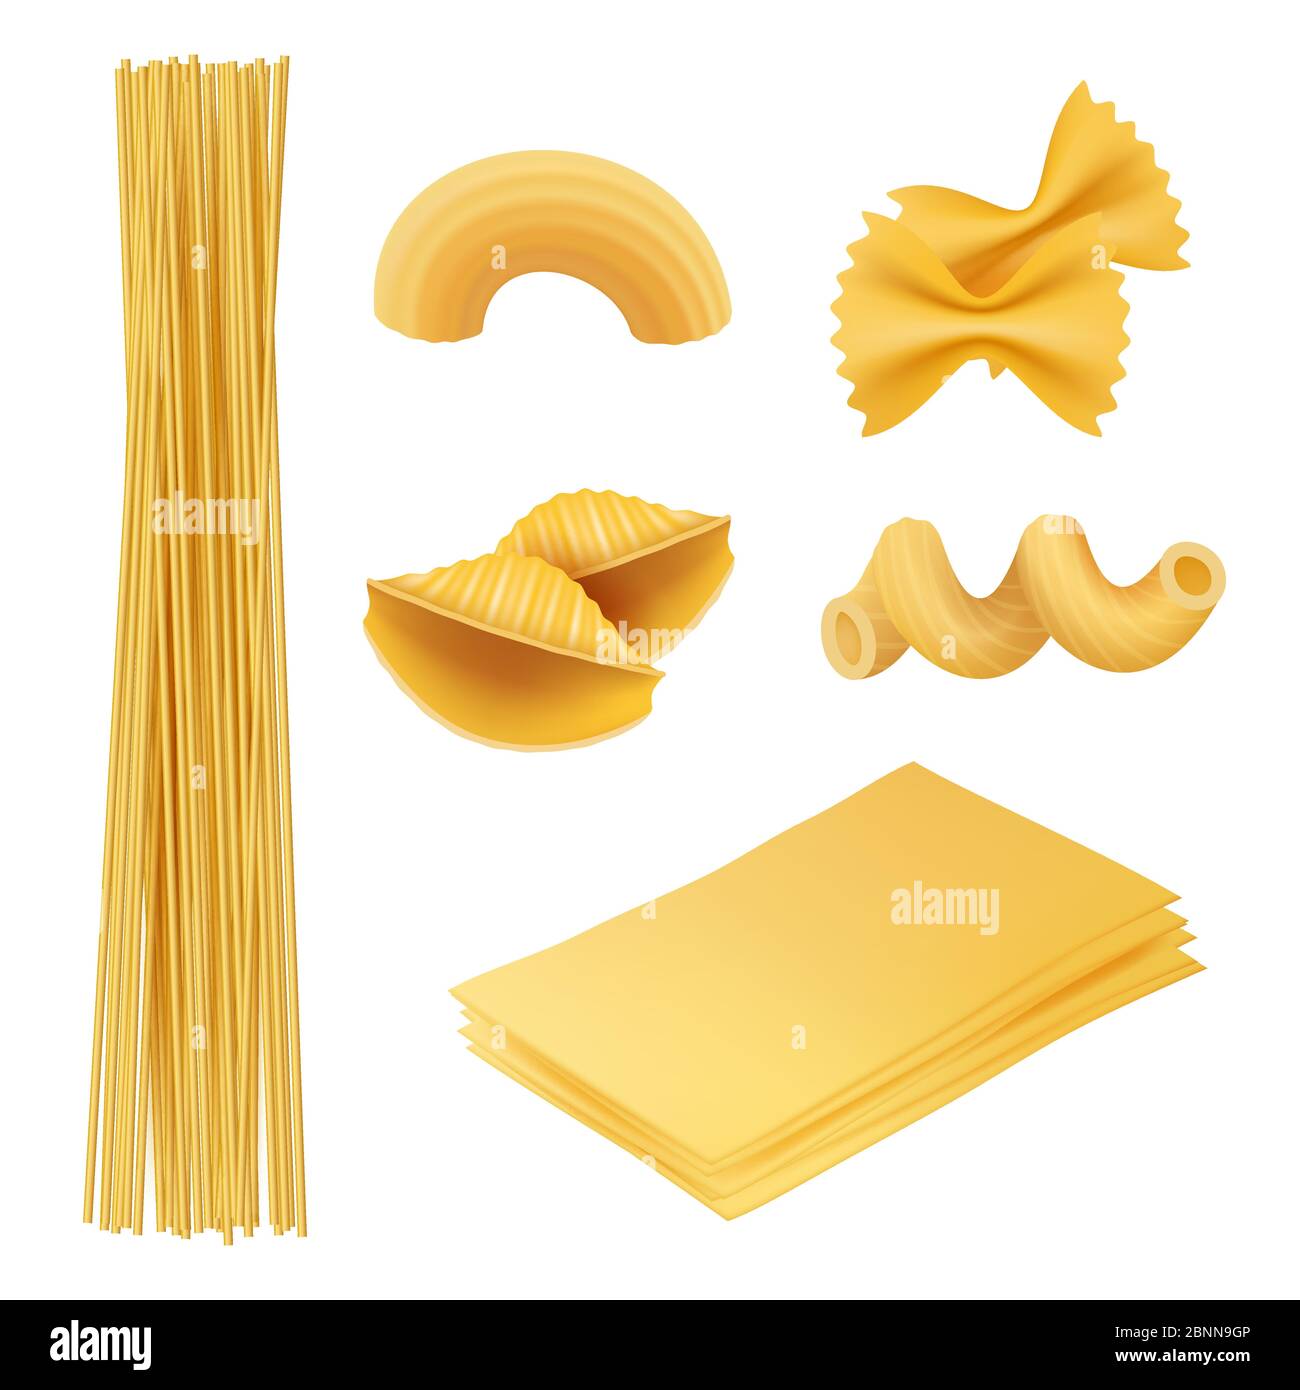 Pasta realista. Comida italiana farfalle fusilli macarroni cocinar ingredientes vector cuadros de la cocina tradicional Ilustración del Vector